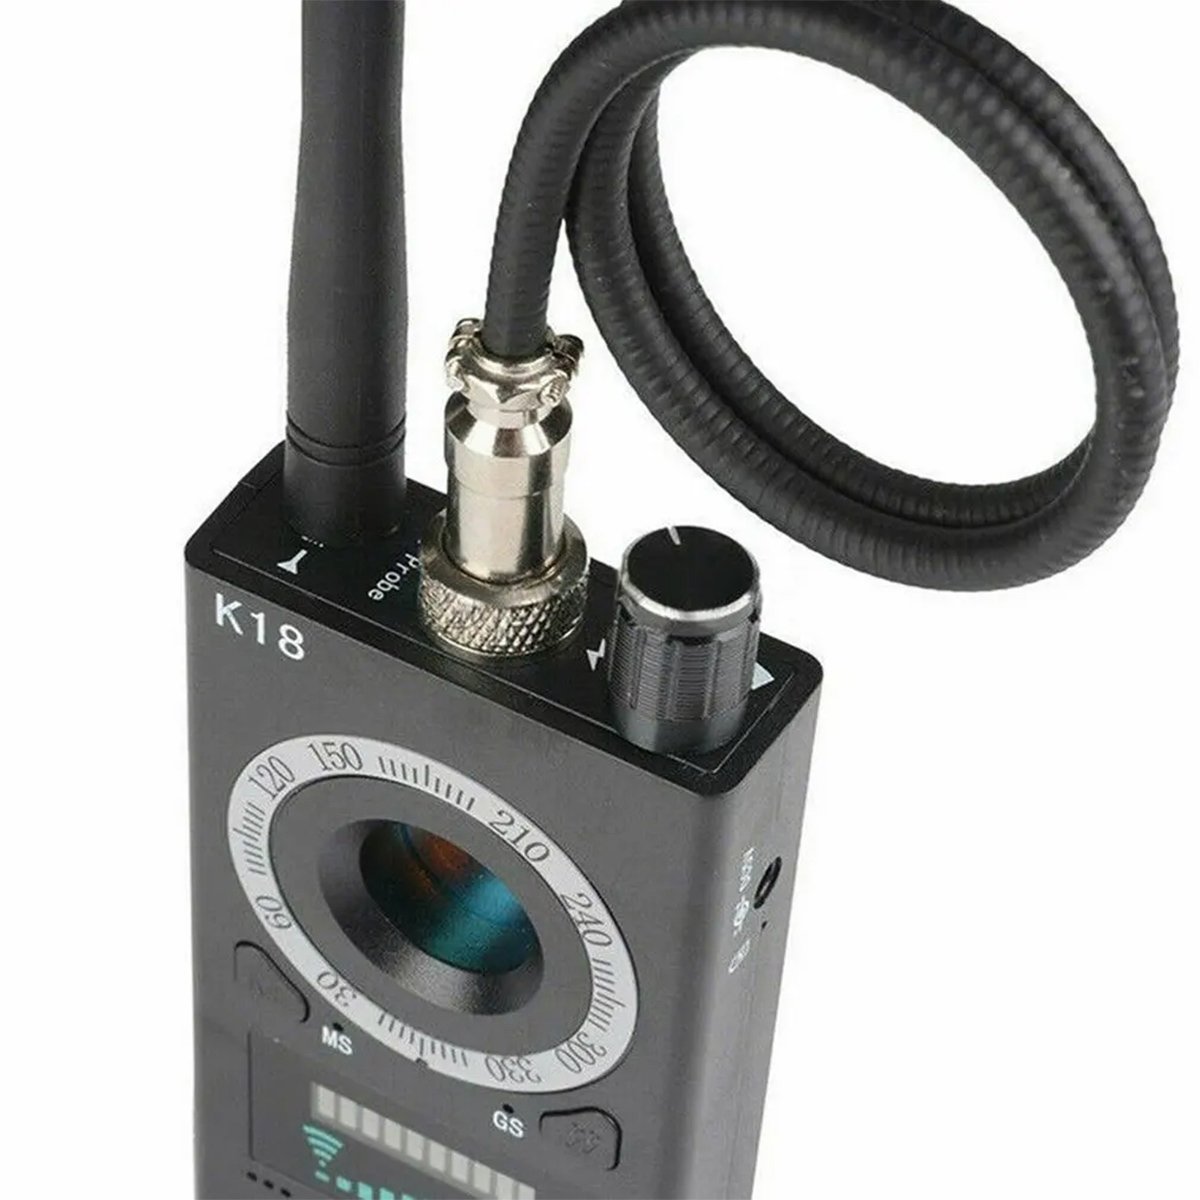 Detector Sinal Localizador Camera Escondida Rastreador Gps Escuta Infravermelho Portatil Anti Espiao - 14